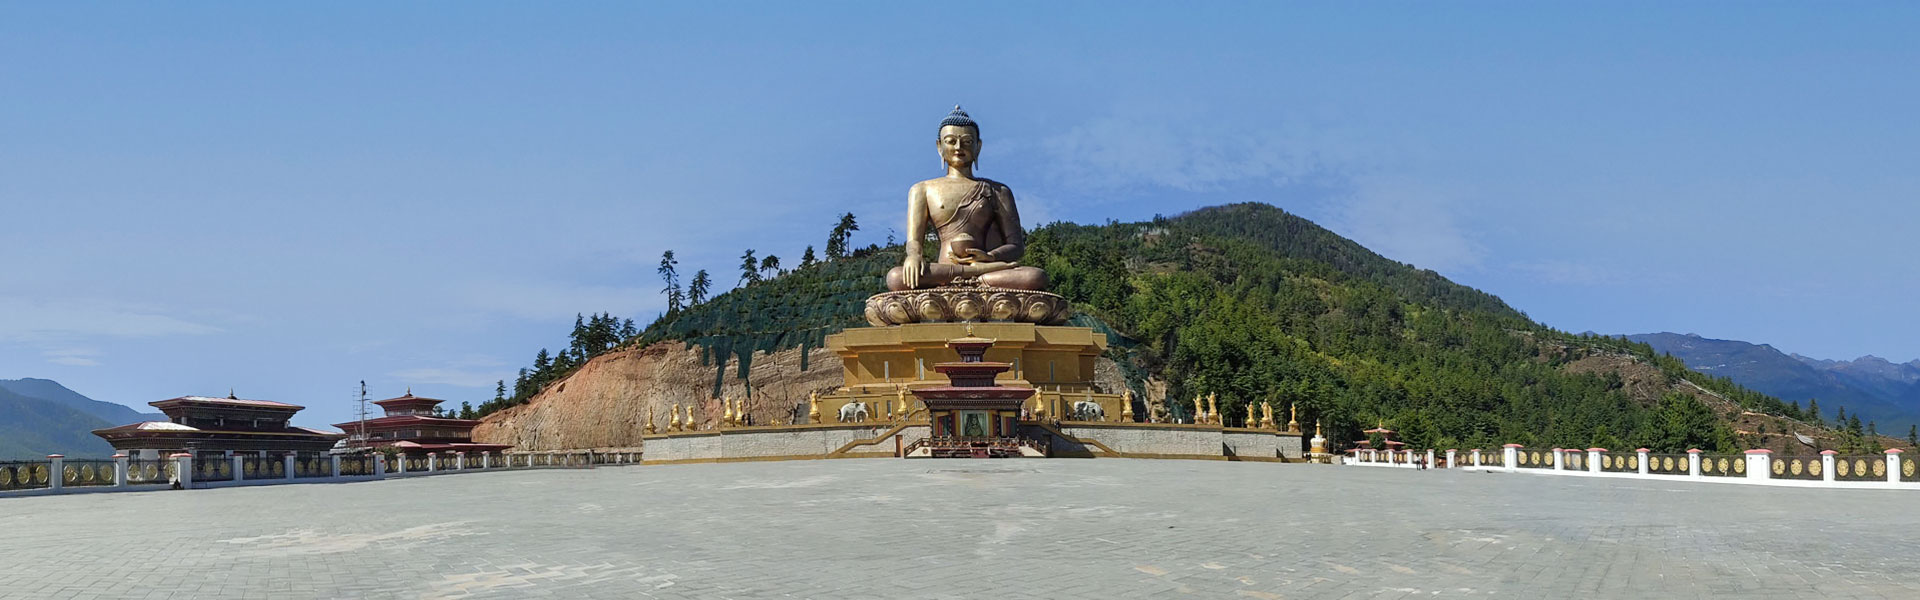 Golden Buddah Thimphu Bhutan